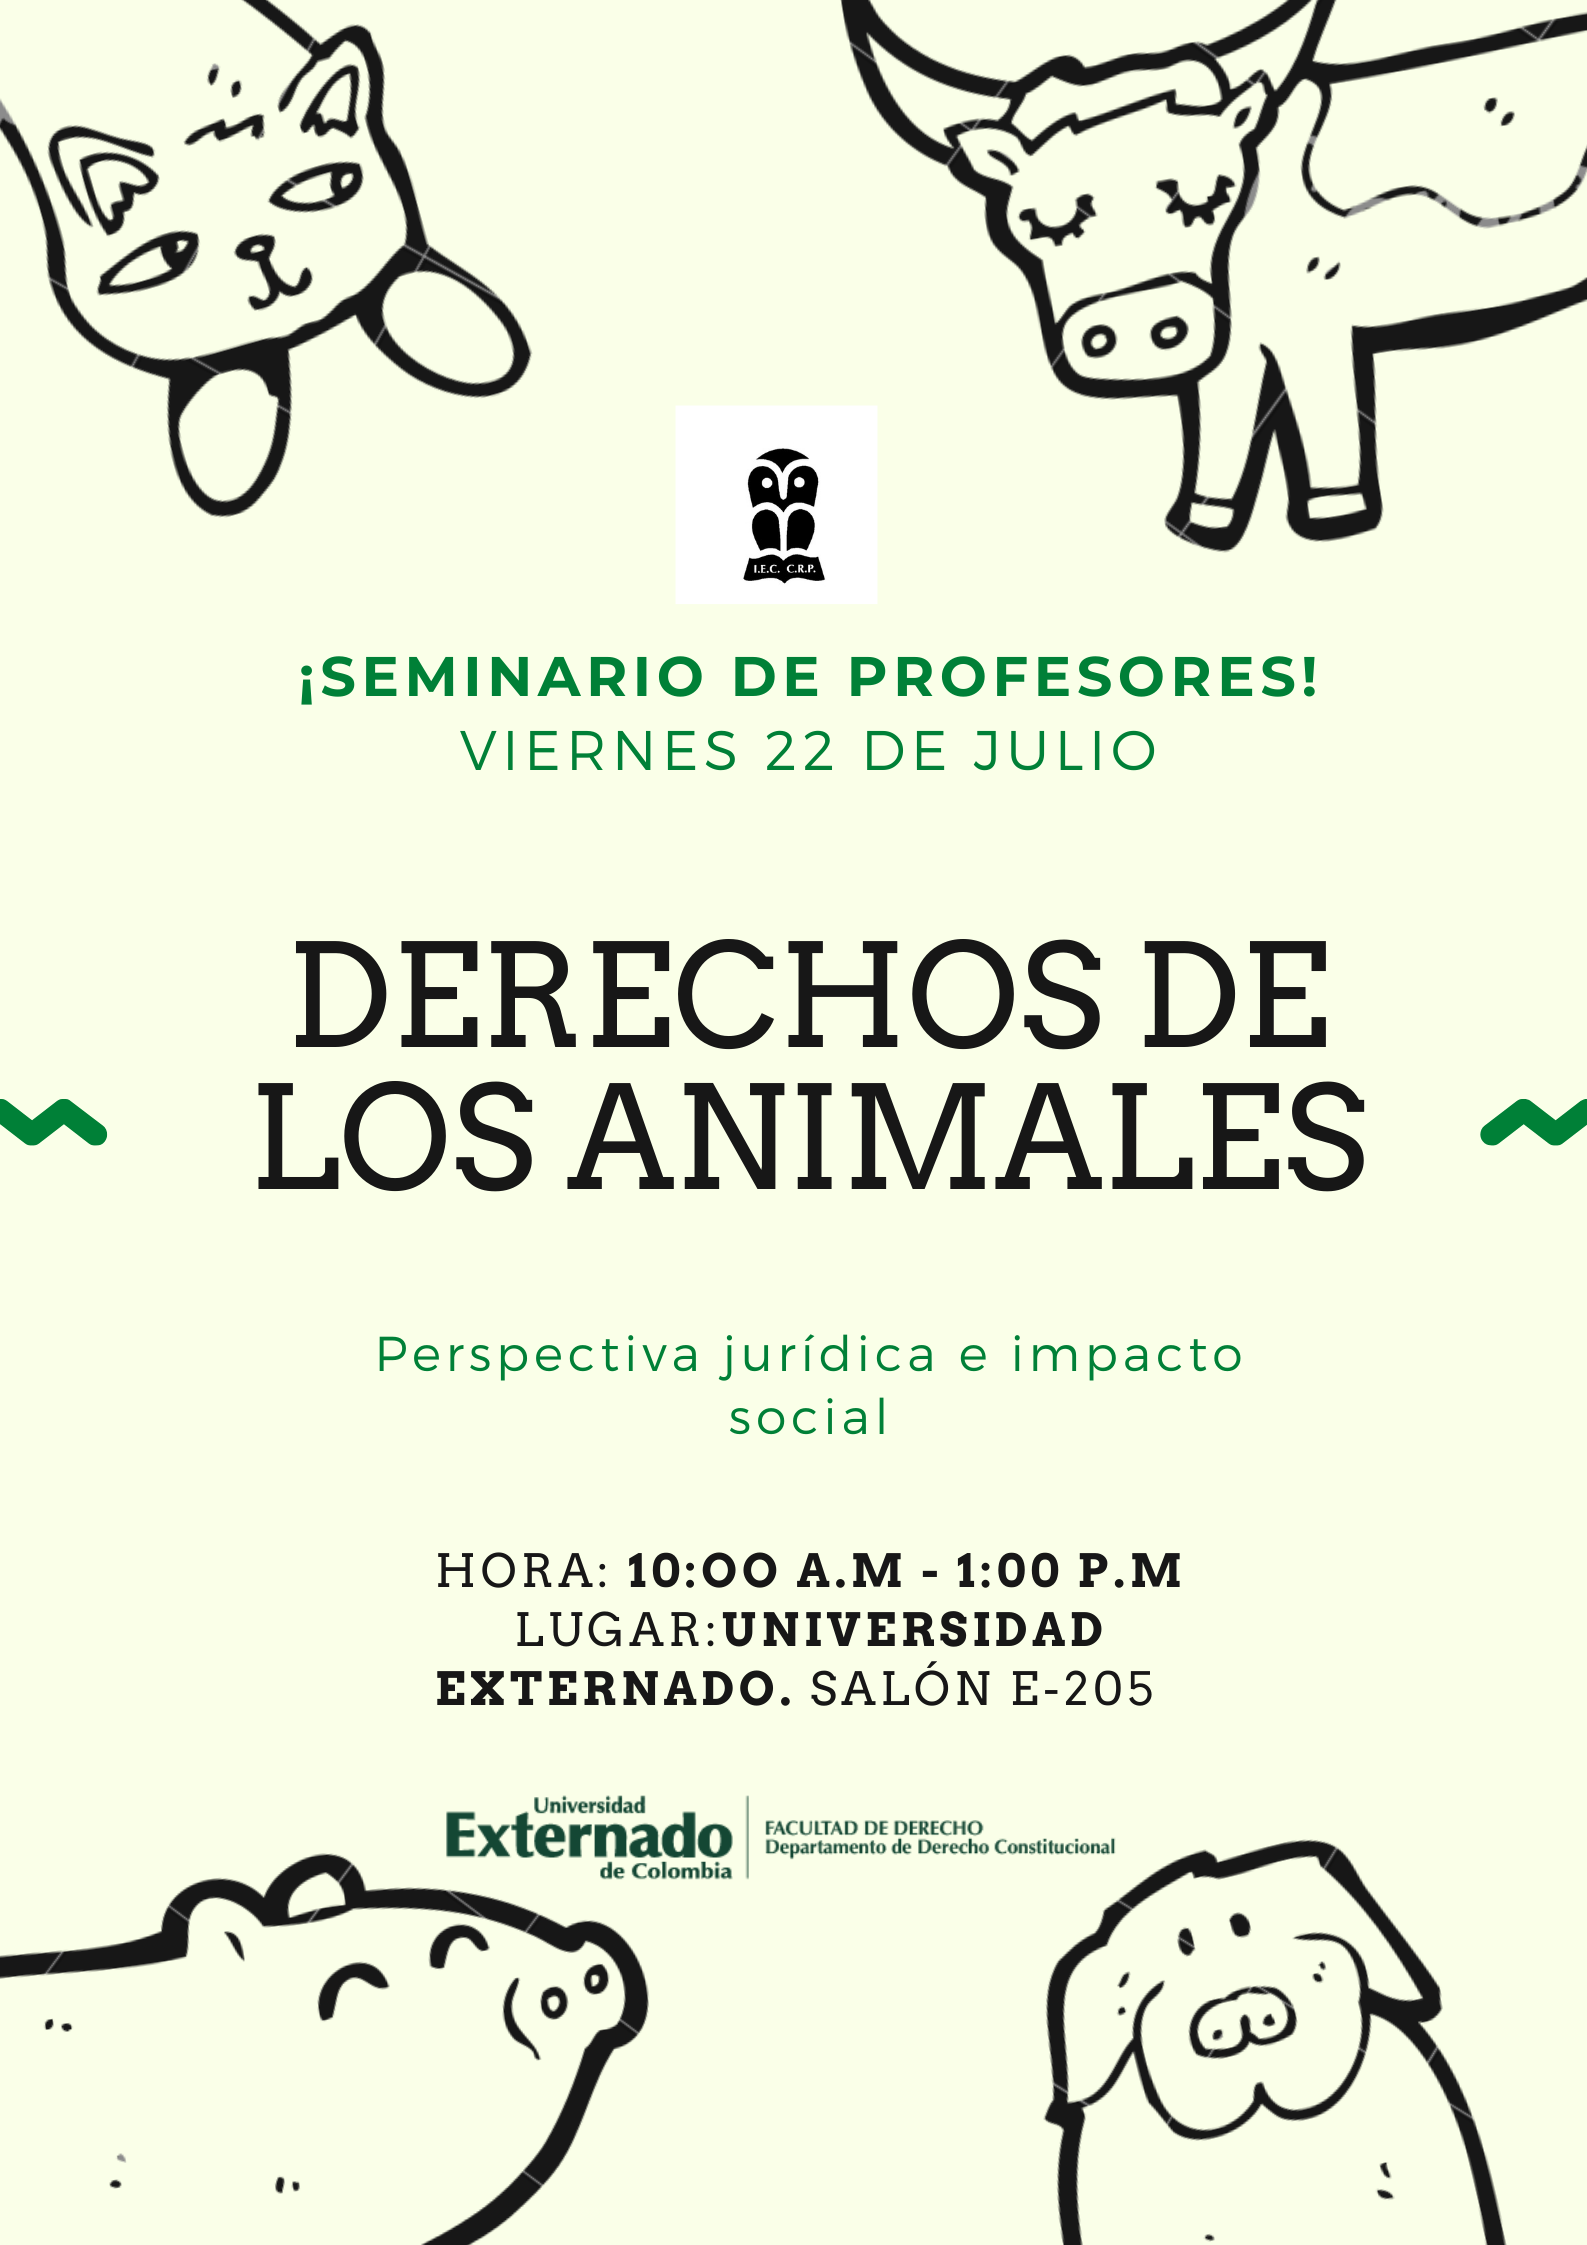 Seminario de profesores: “Derechos de los animales. Perspectiva jurídica e impacto social”.